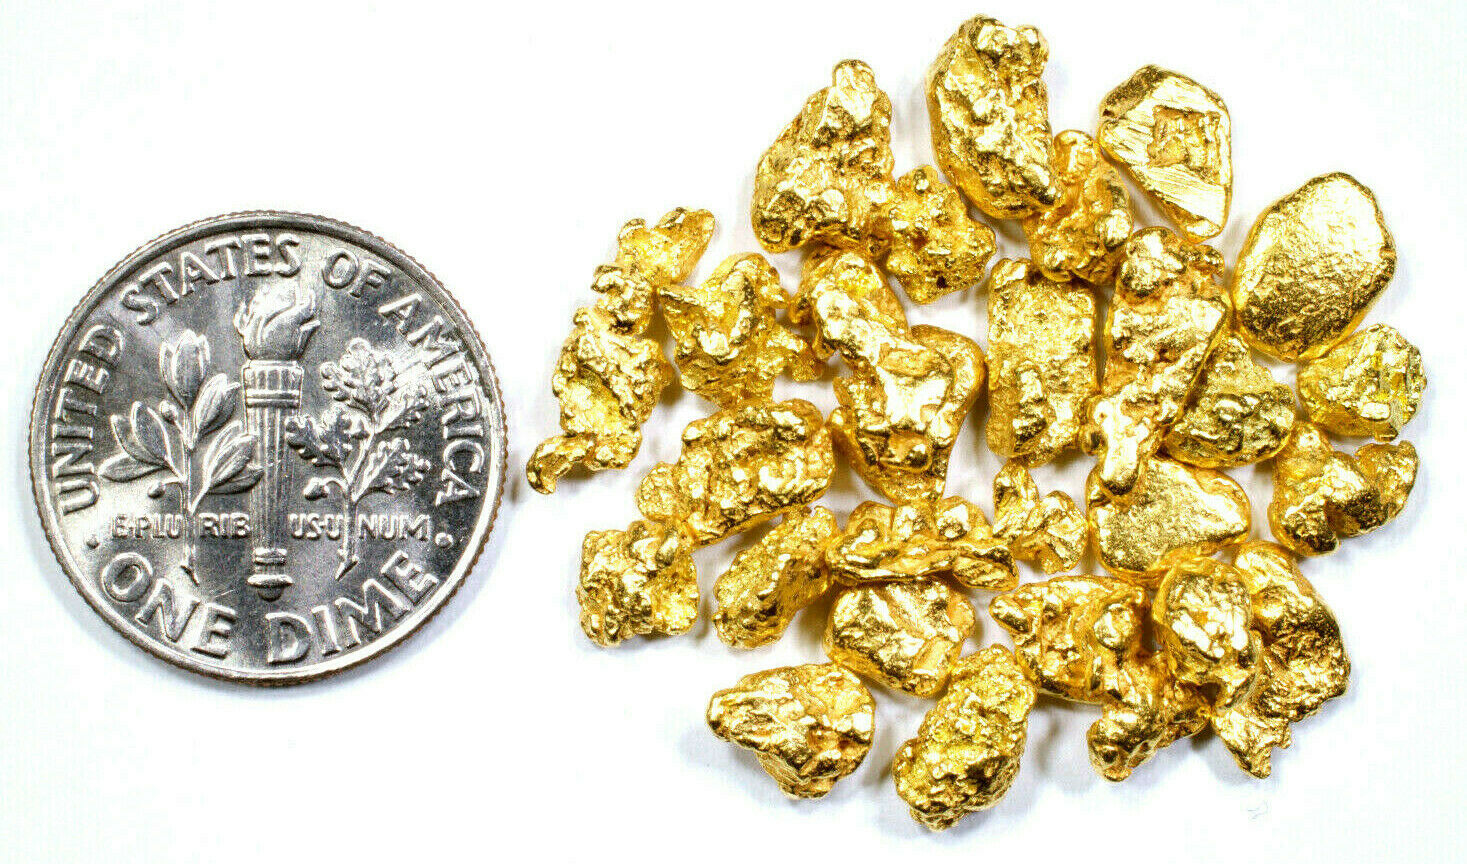 1.550 GRAMS ALASKAN YUKON BC NATURAL PURE GOLD NUGGETS #4 MESH